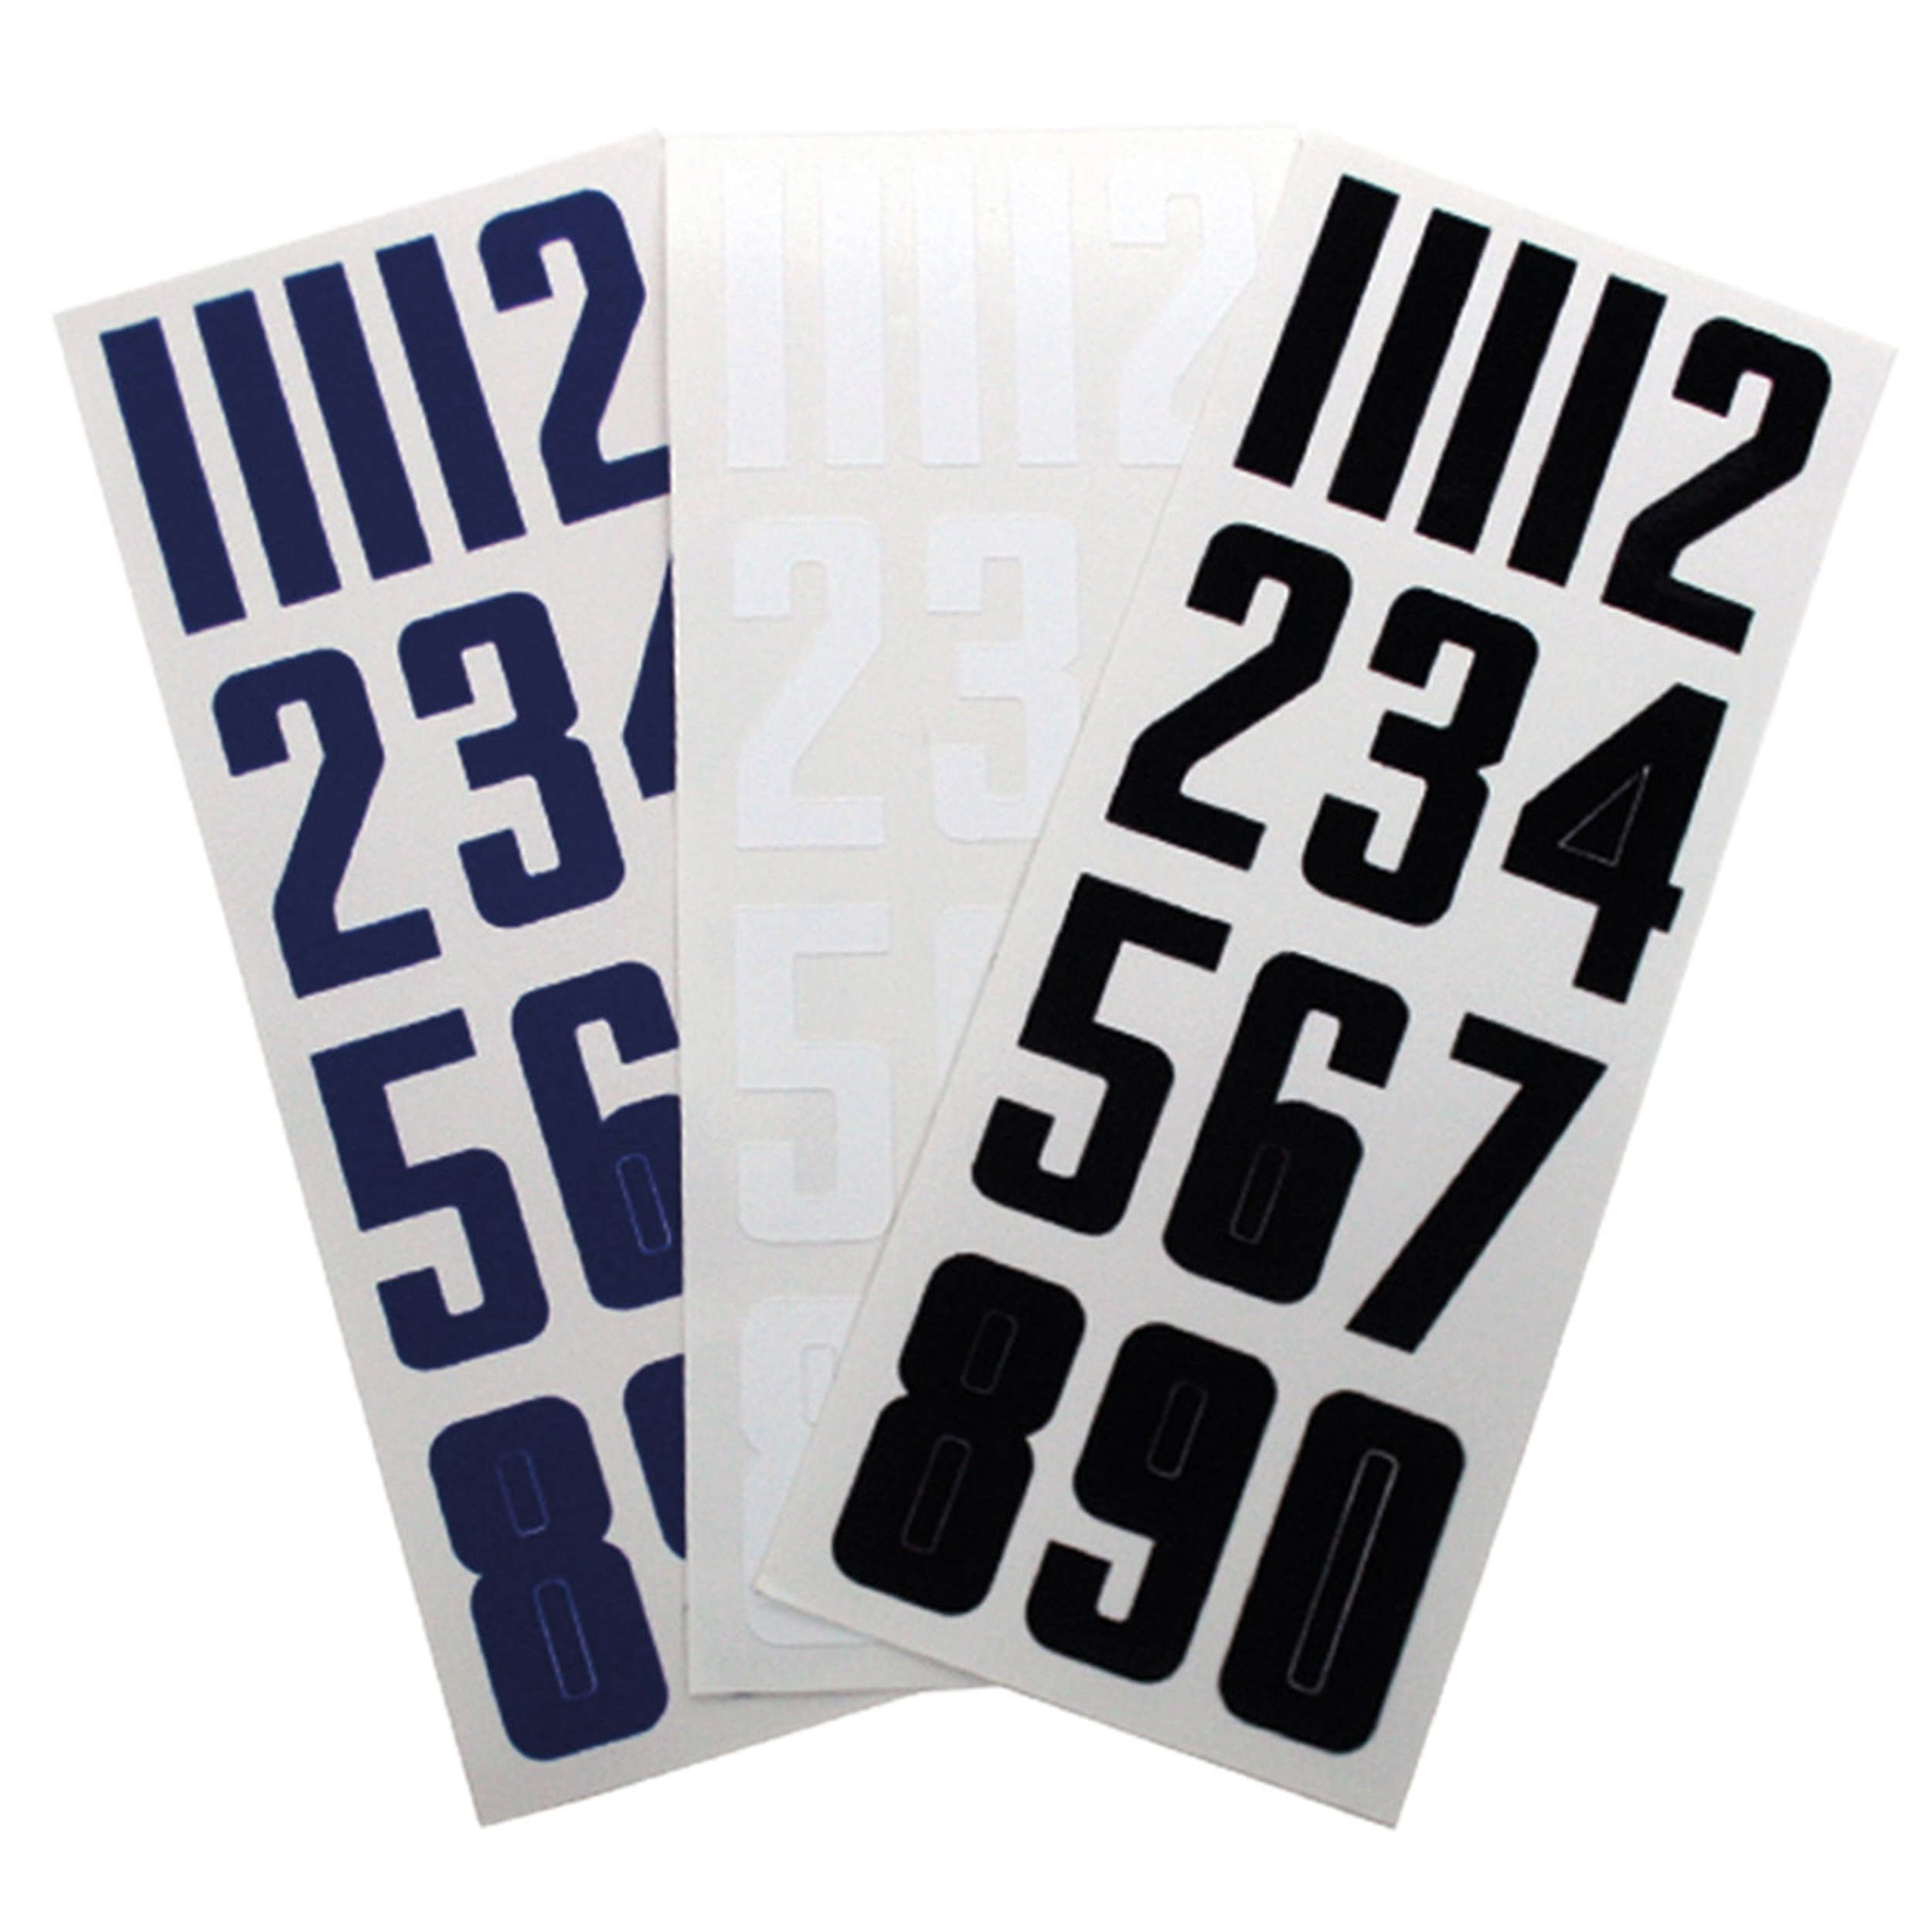 Bauer - Numeri adesivi per casco BAUER - Accessori per caschi da hockey -  Protezioni - Giocatore di hockey - Icehockey - Pro Hockey